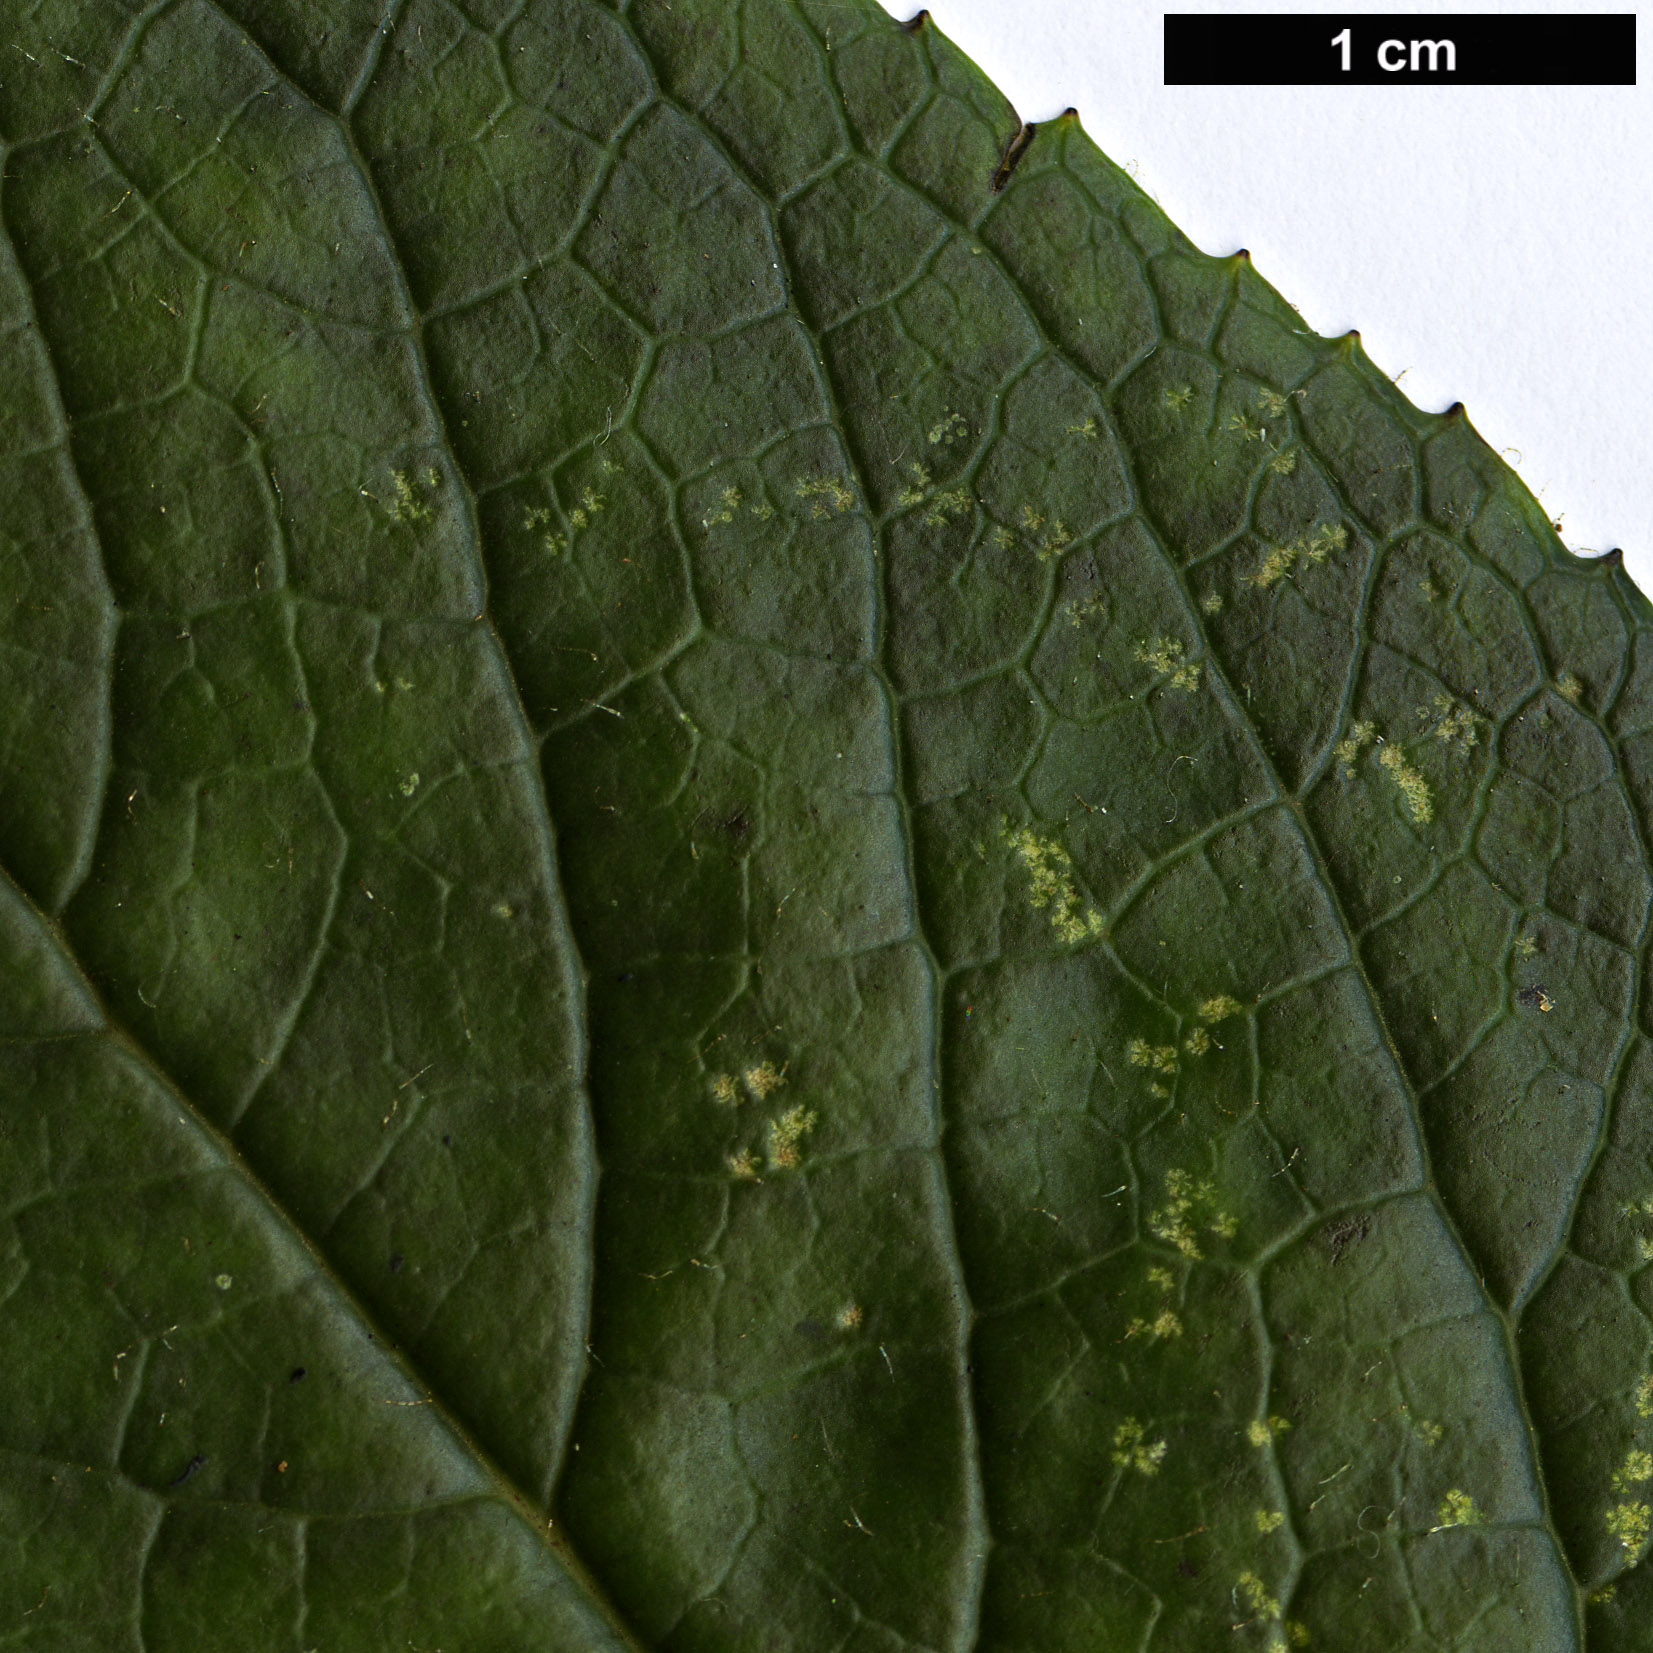 High resolution image: Family: Plantaginaceae - Genus: Isoplexis - Taxon: sceptrum